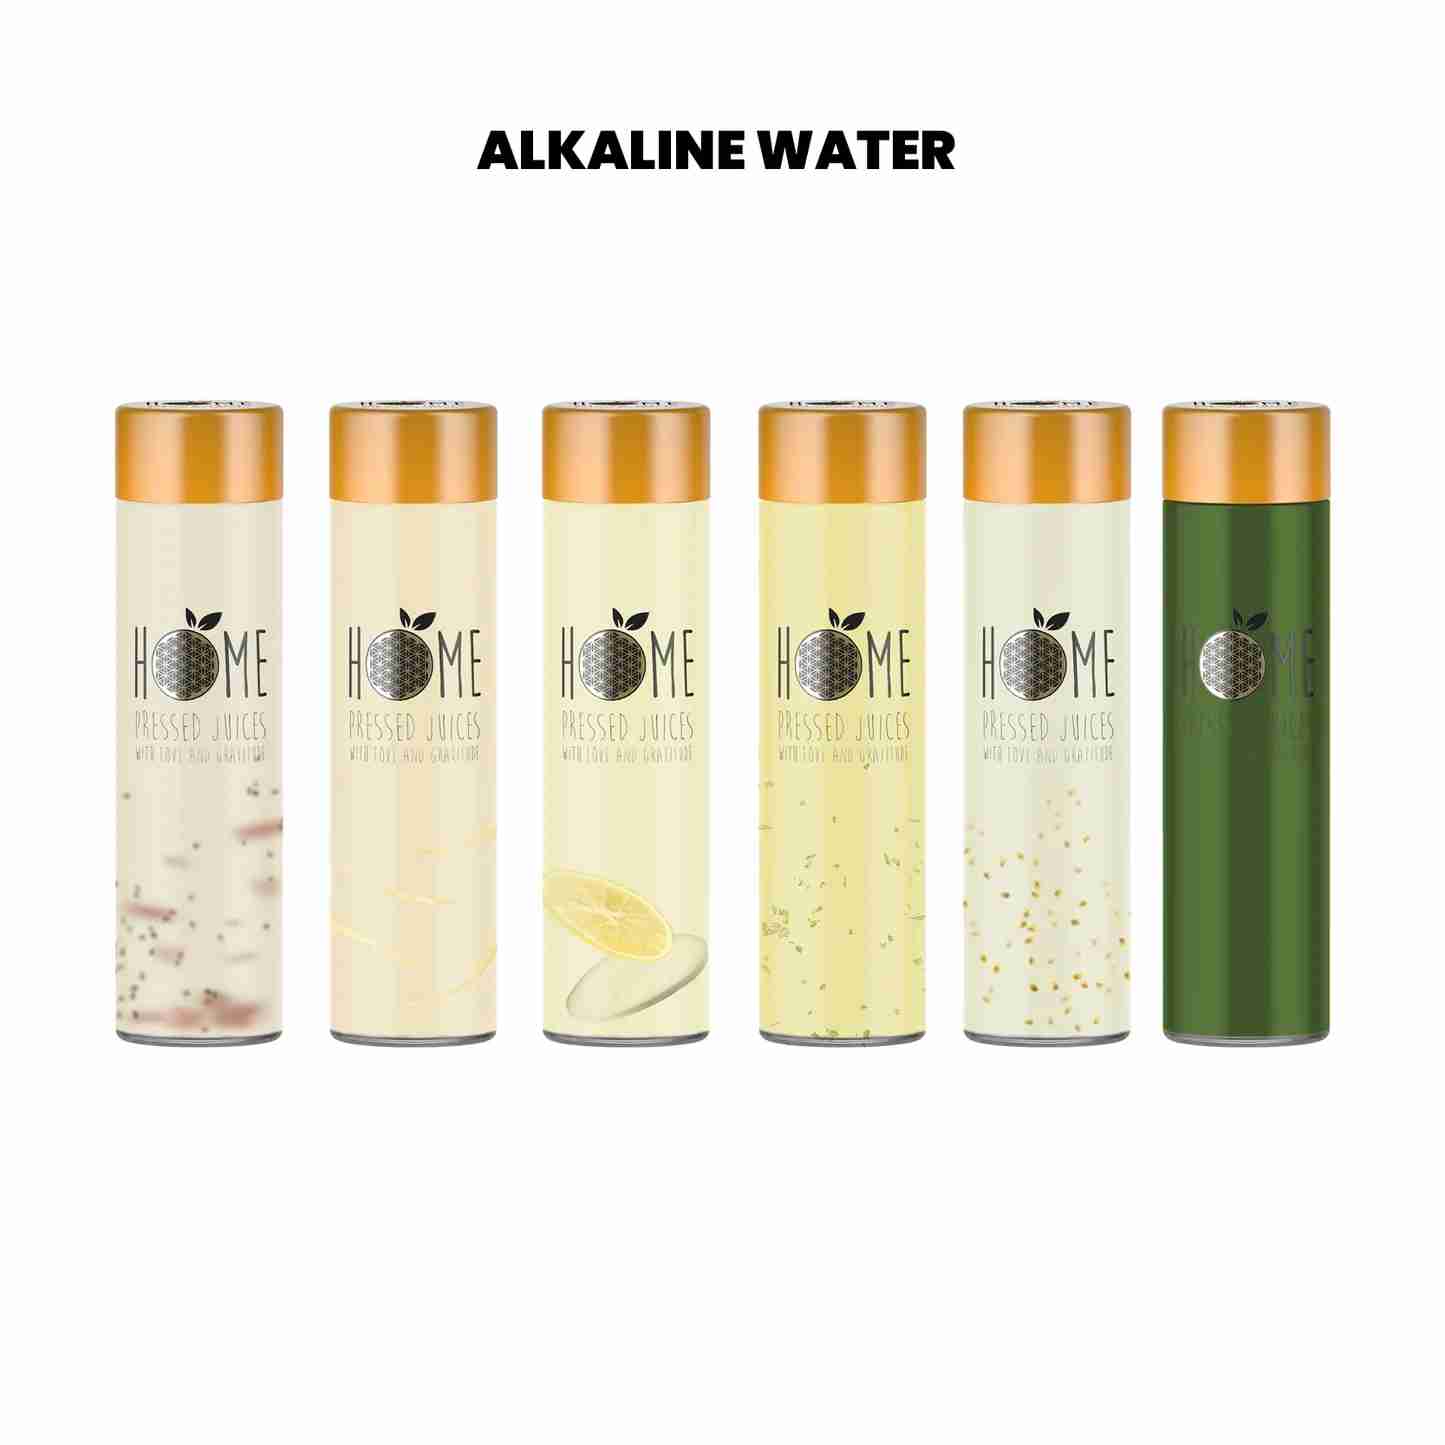 Alkaline Water - Home Juice